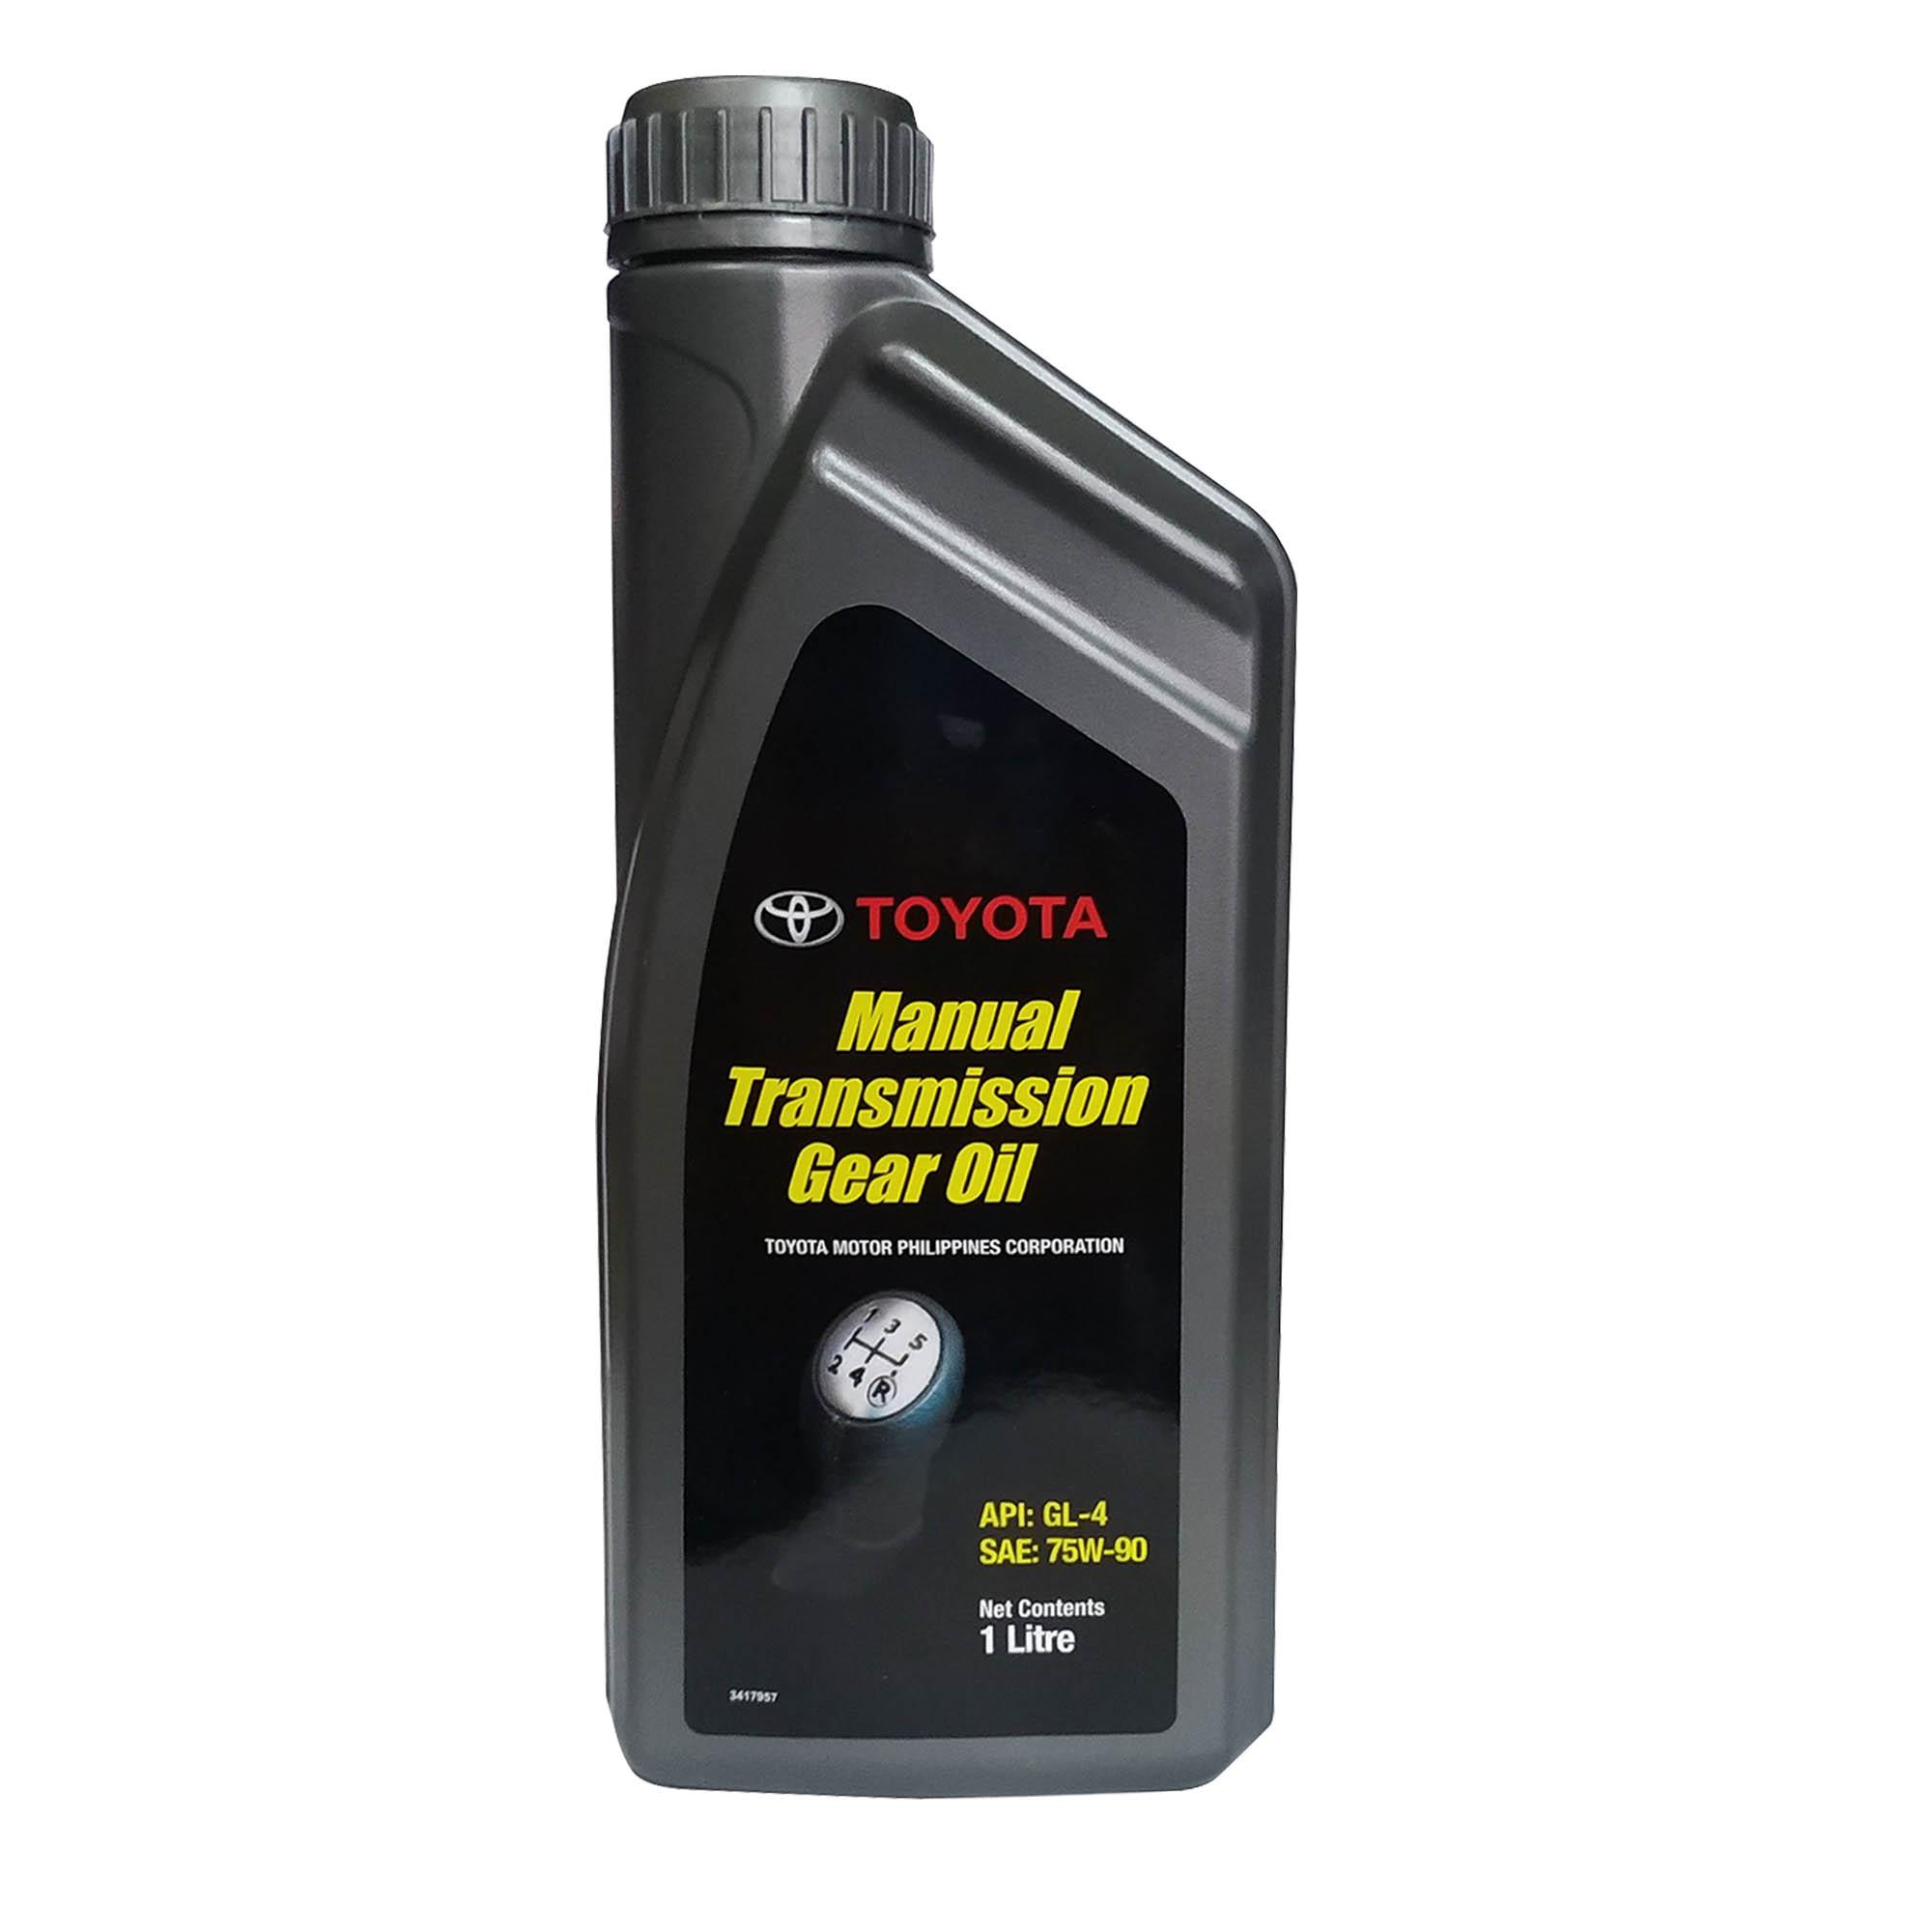 Автомобильное трансмиссионное масло. Toyota Gear Oil 75w-90 gl4. Transmission oil1661640. Toyota Genuine manual transmission Gear Oil lv API gl-4 авито.